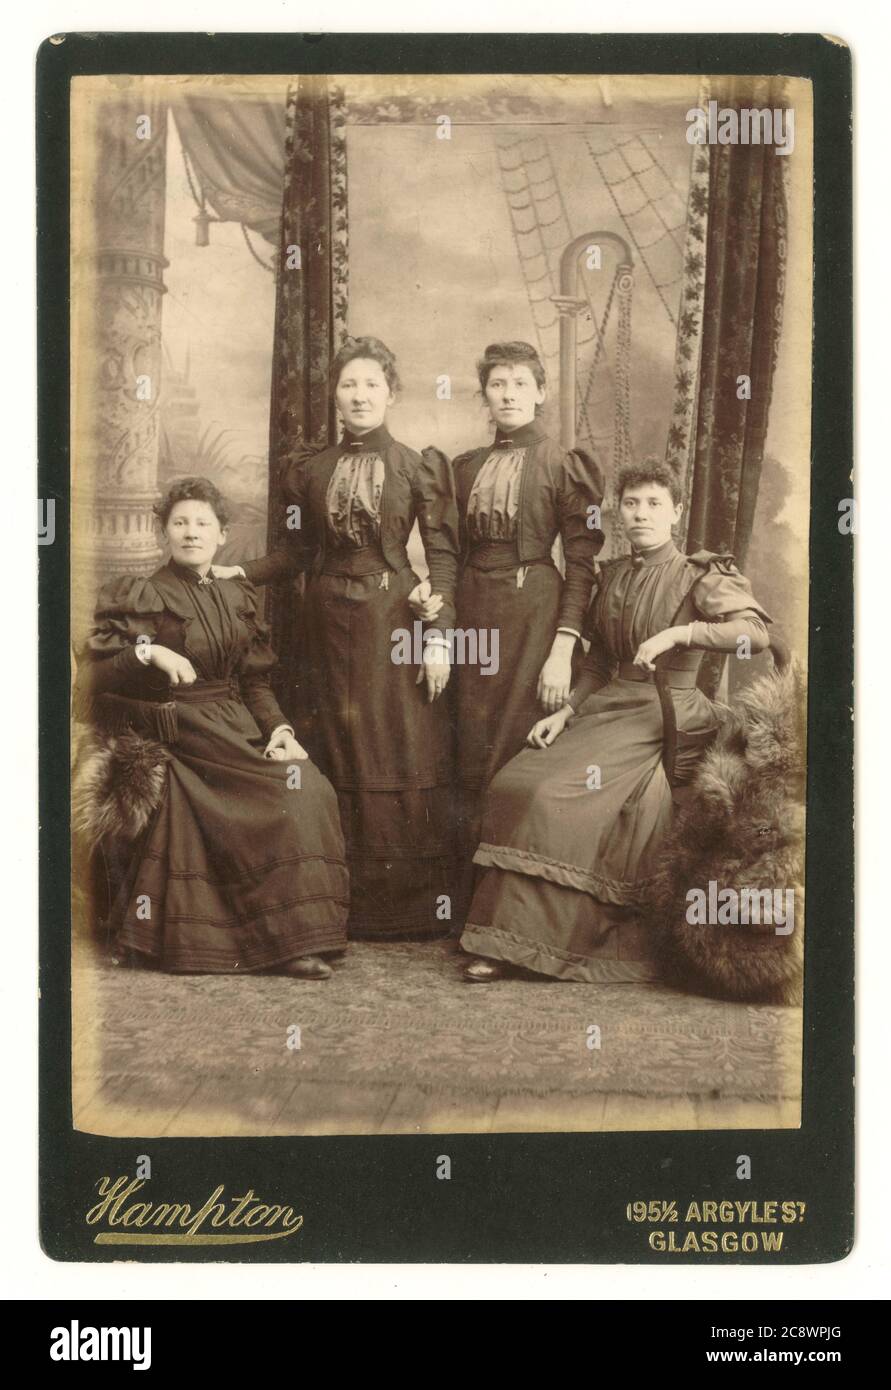 Viktorianische Kabinettkarte von vier Frauen, möglicherweise verwandt, mit aufwändiger Kulisse, um 1894, Hampton Studio, Argyle St. Glasgow, Schottland, Großbritannien Stockfoto